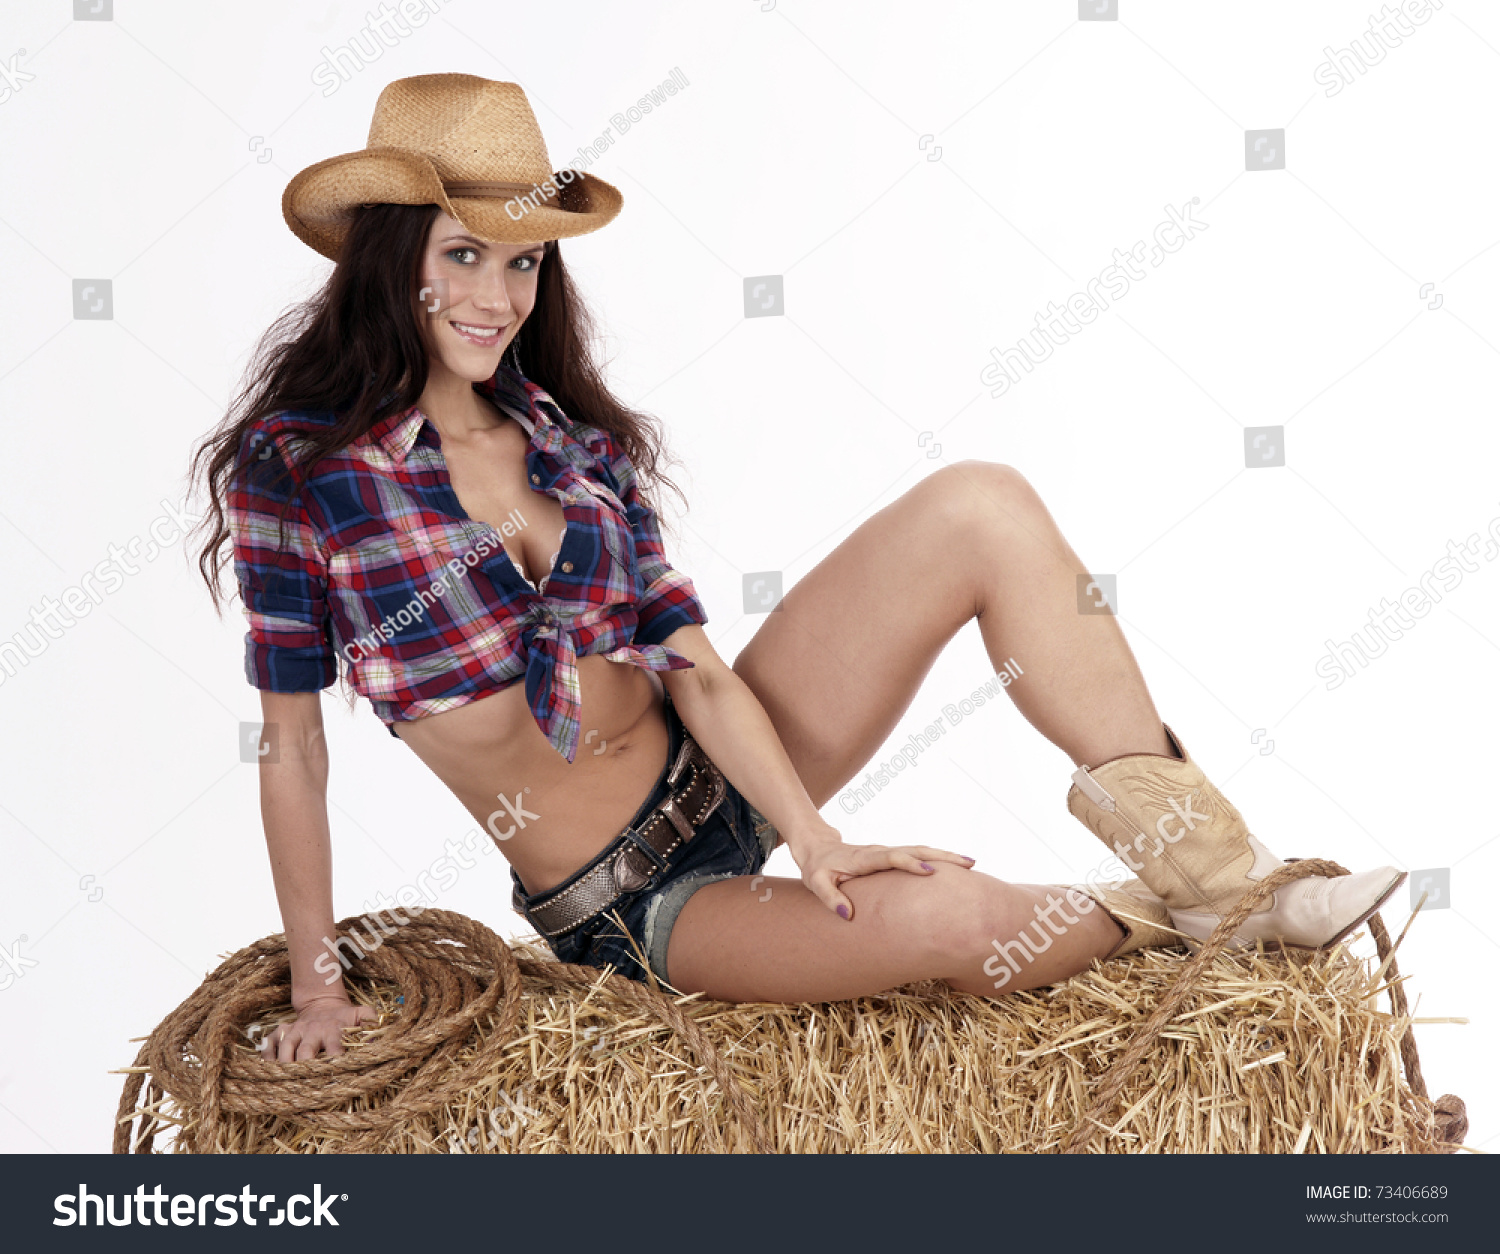 Обнаженная деваха в ковбойской шляпе